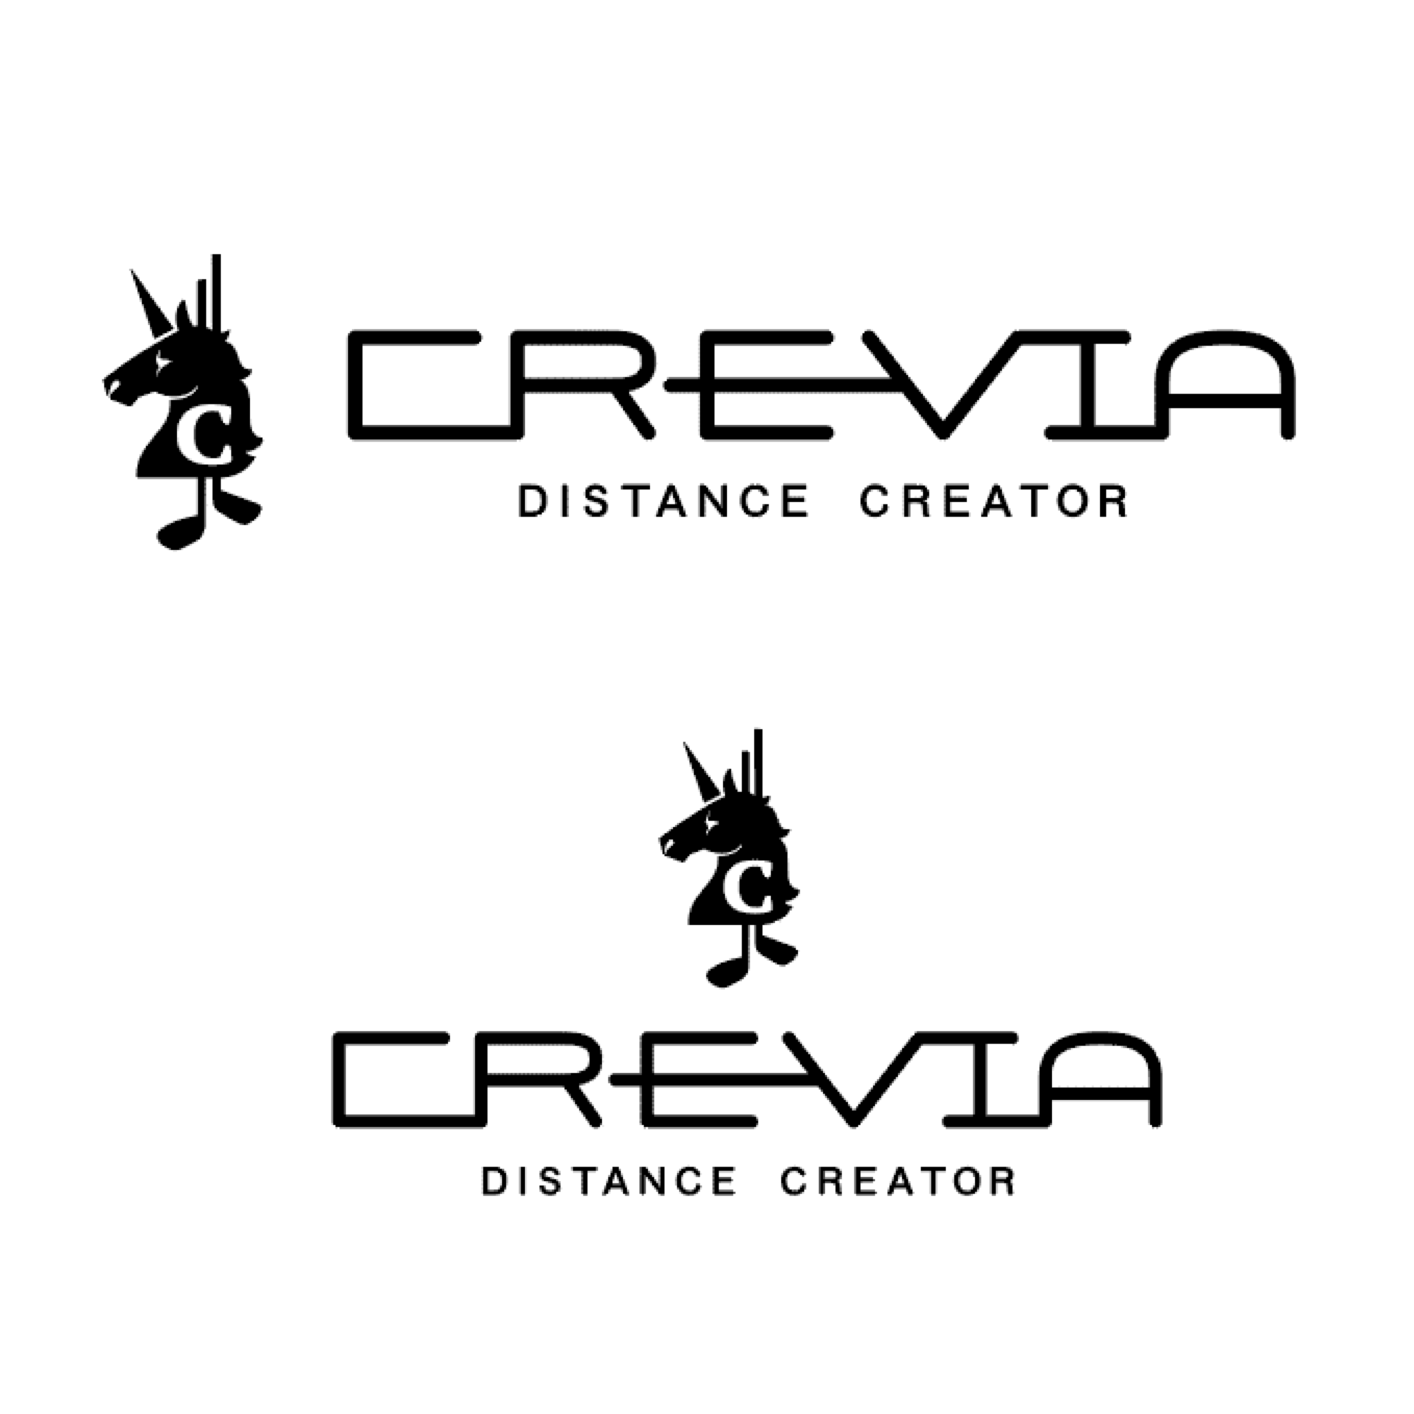 CREVIA ロゴデザイン